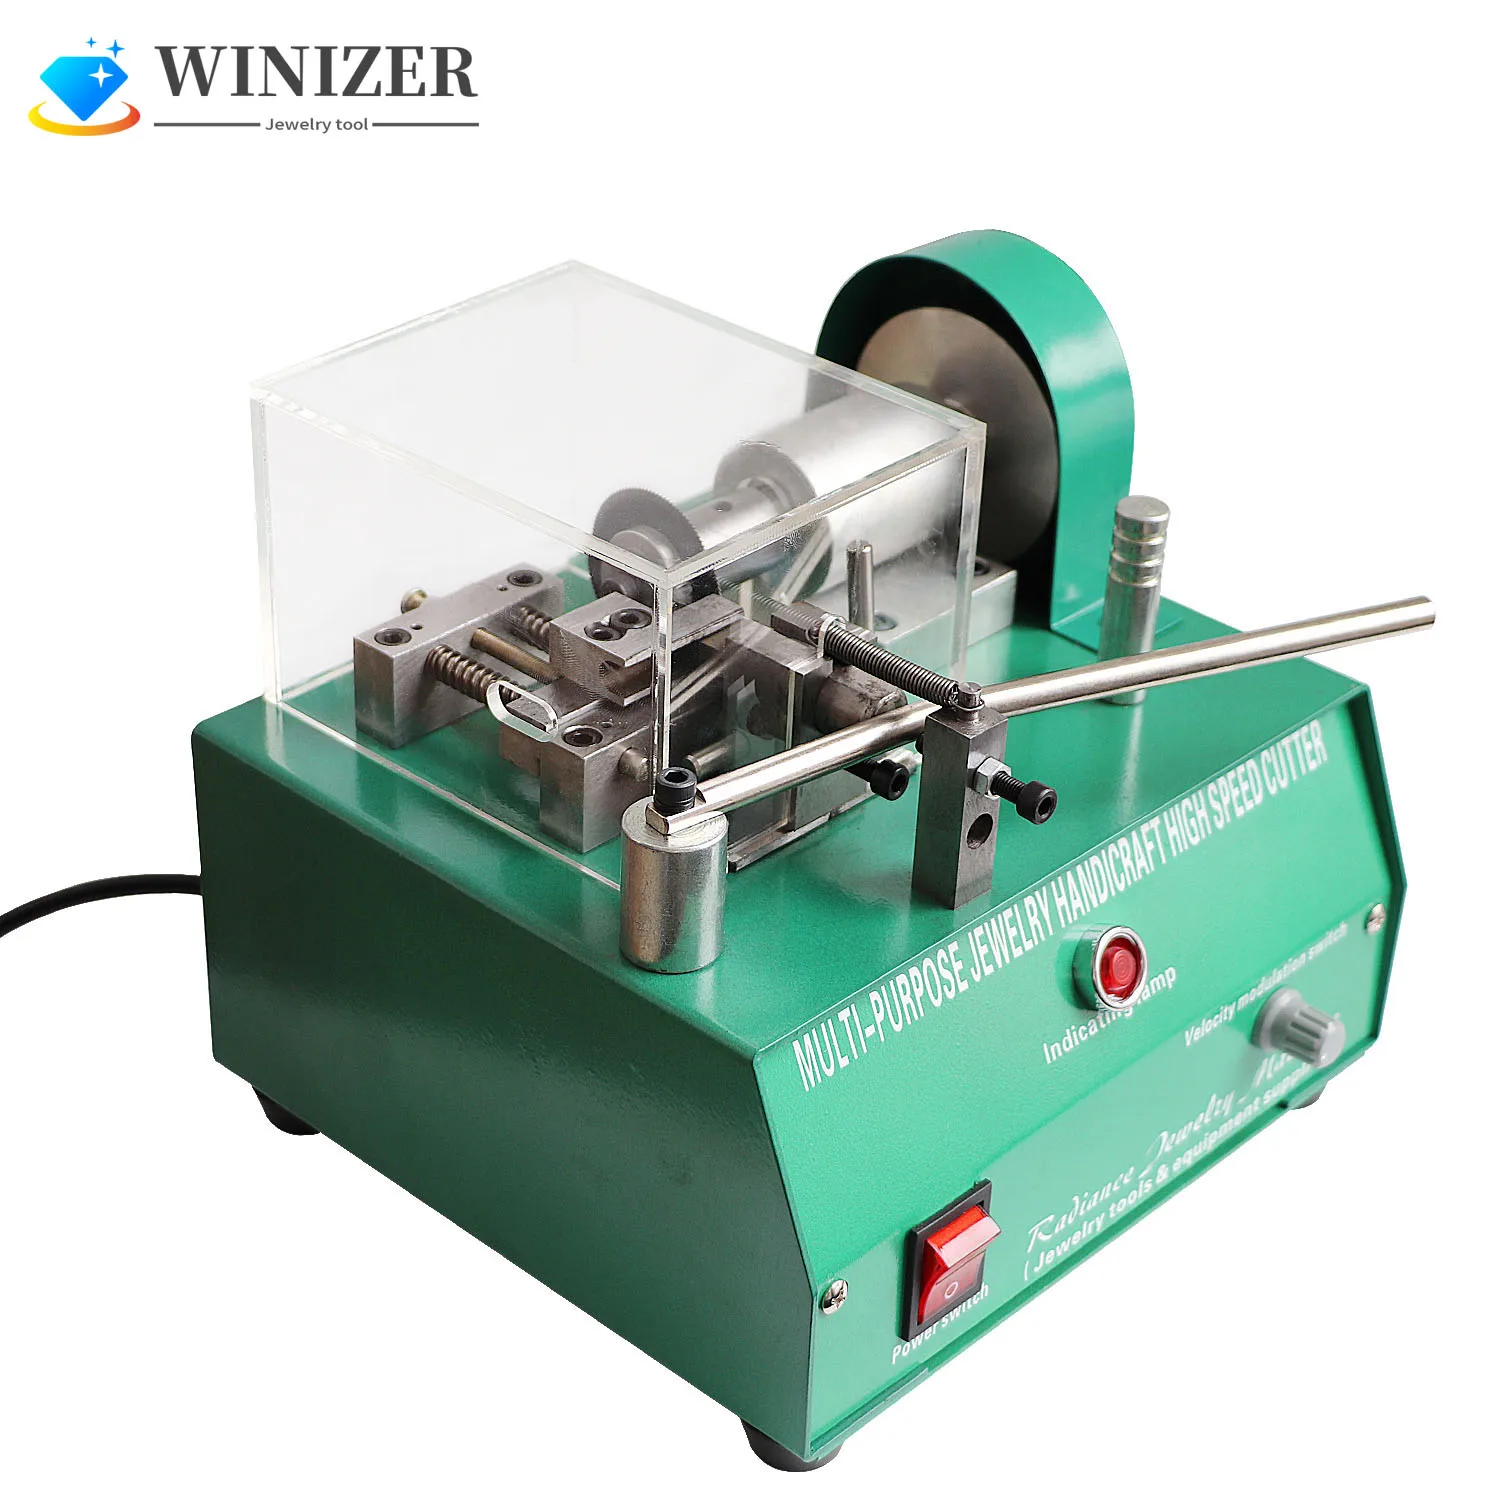 

Multi-Purpose Mini Cutting Machine Cutter Jewelry Handicraft Small Material and Metal Processing Miniature Cutter